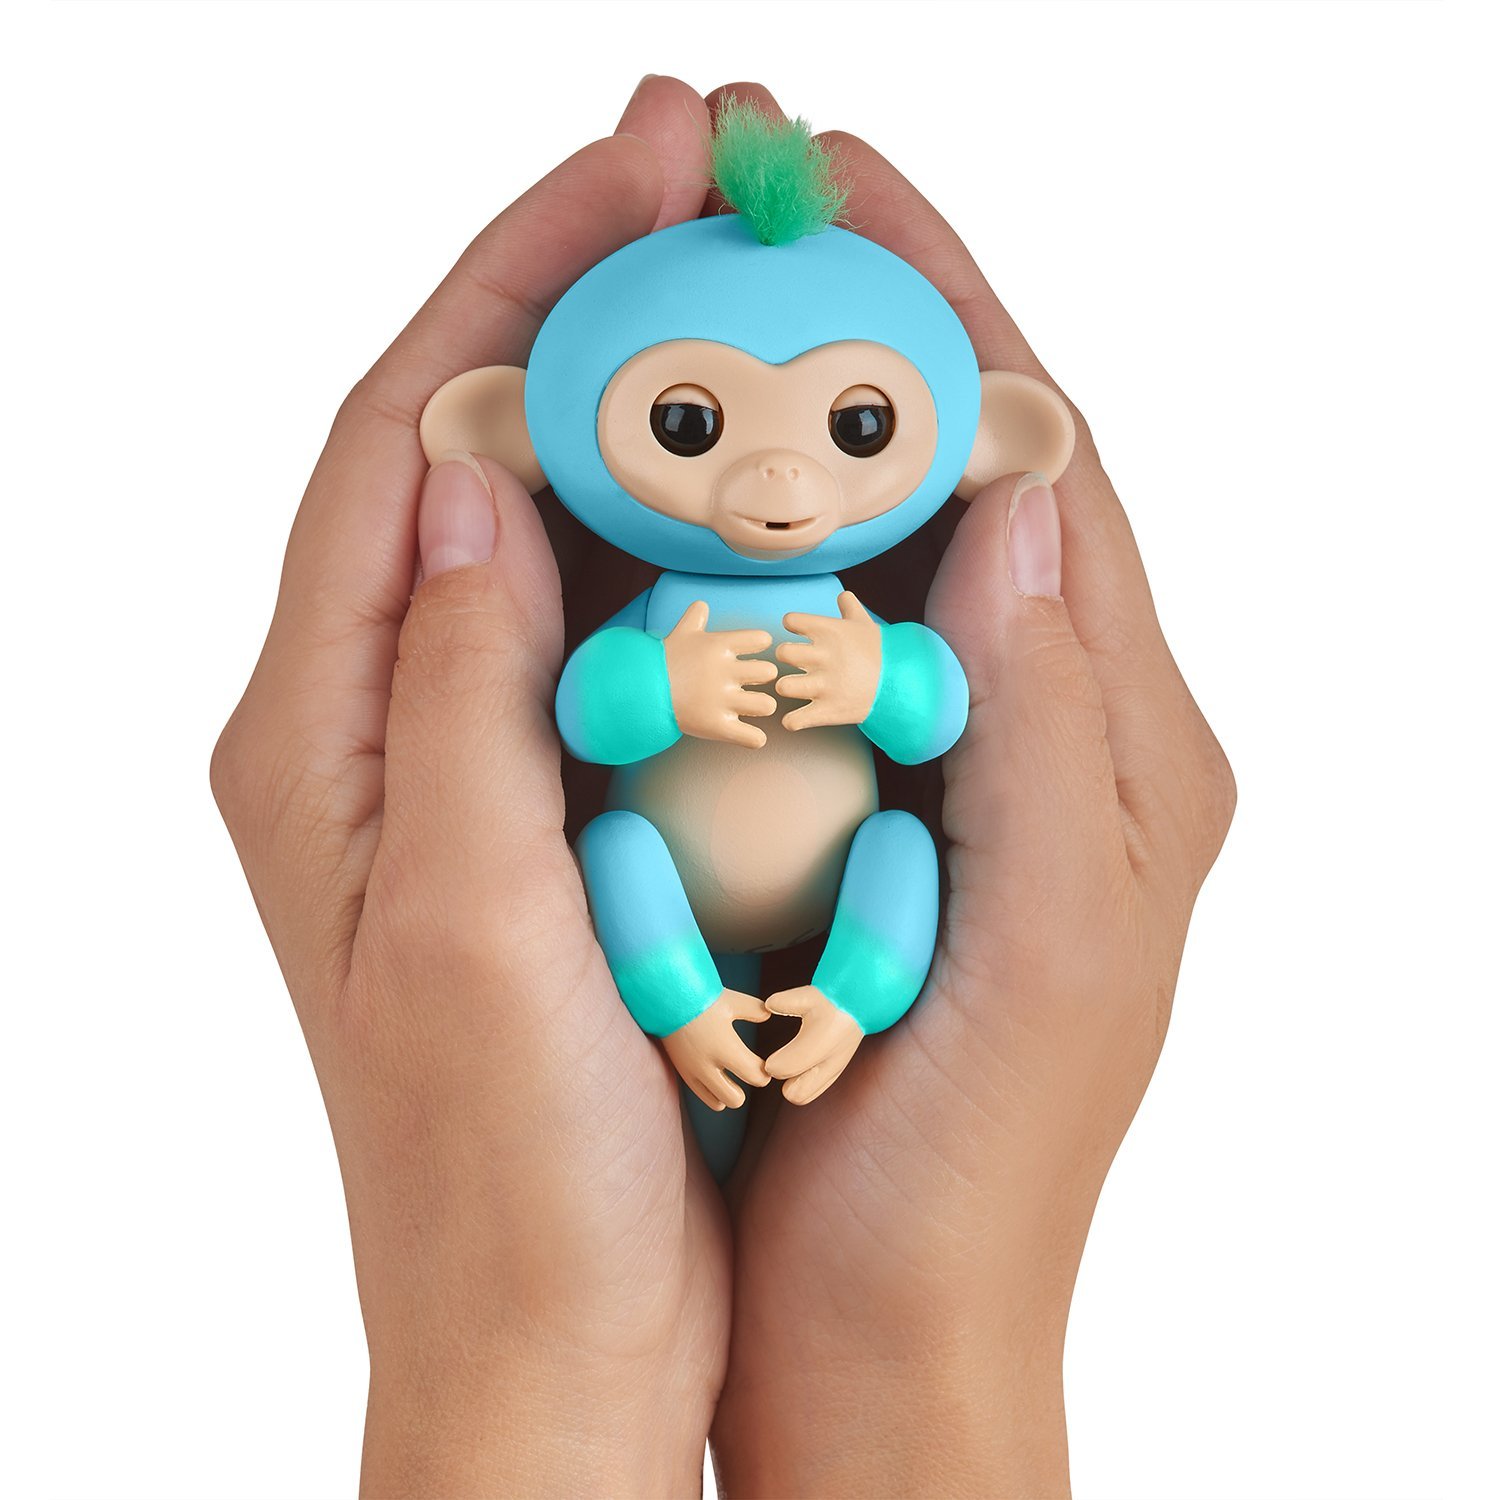 Интерактивная обезьянка Чарли, цвет - голубая с зеленым, 12 см.  